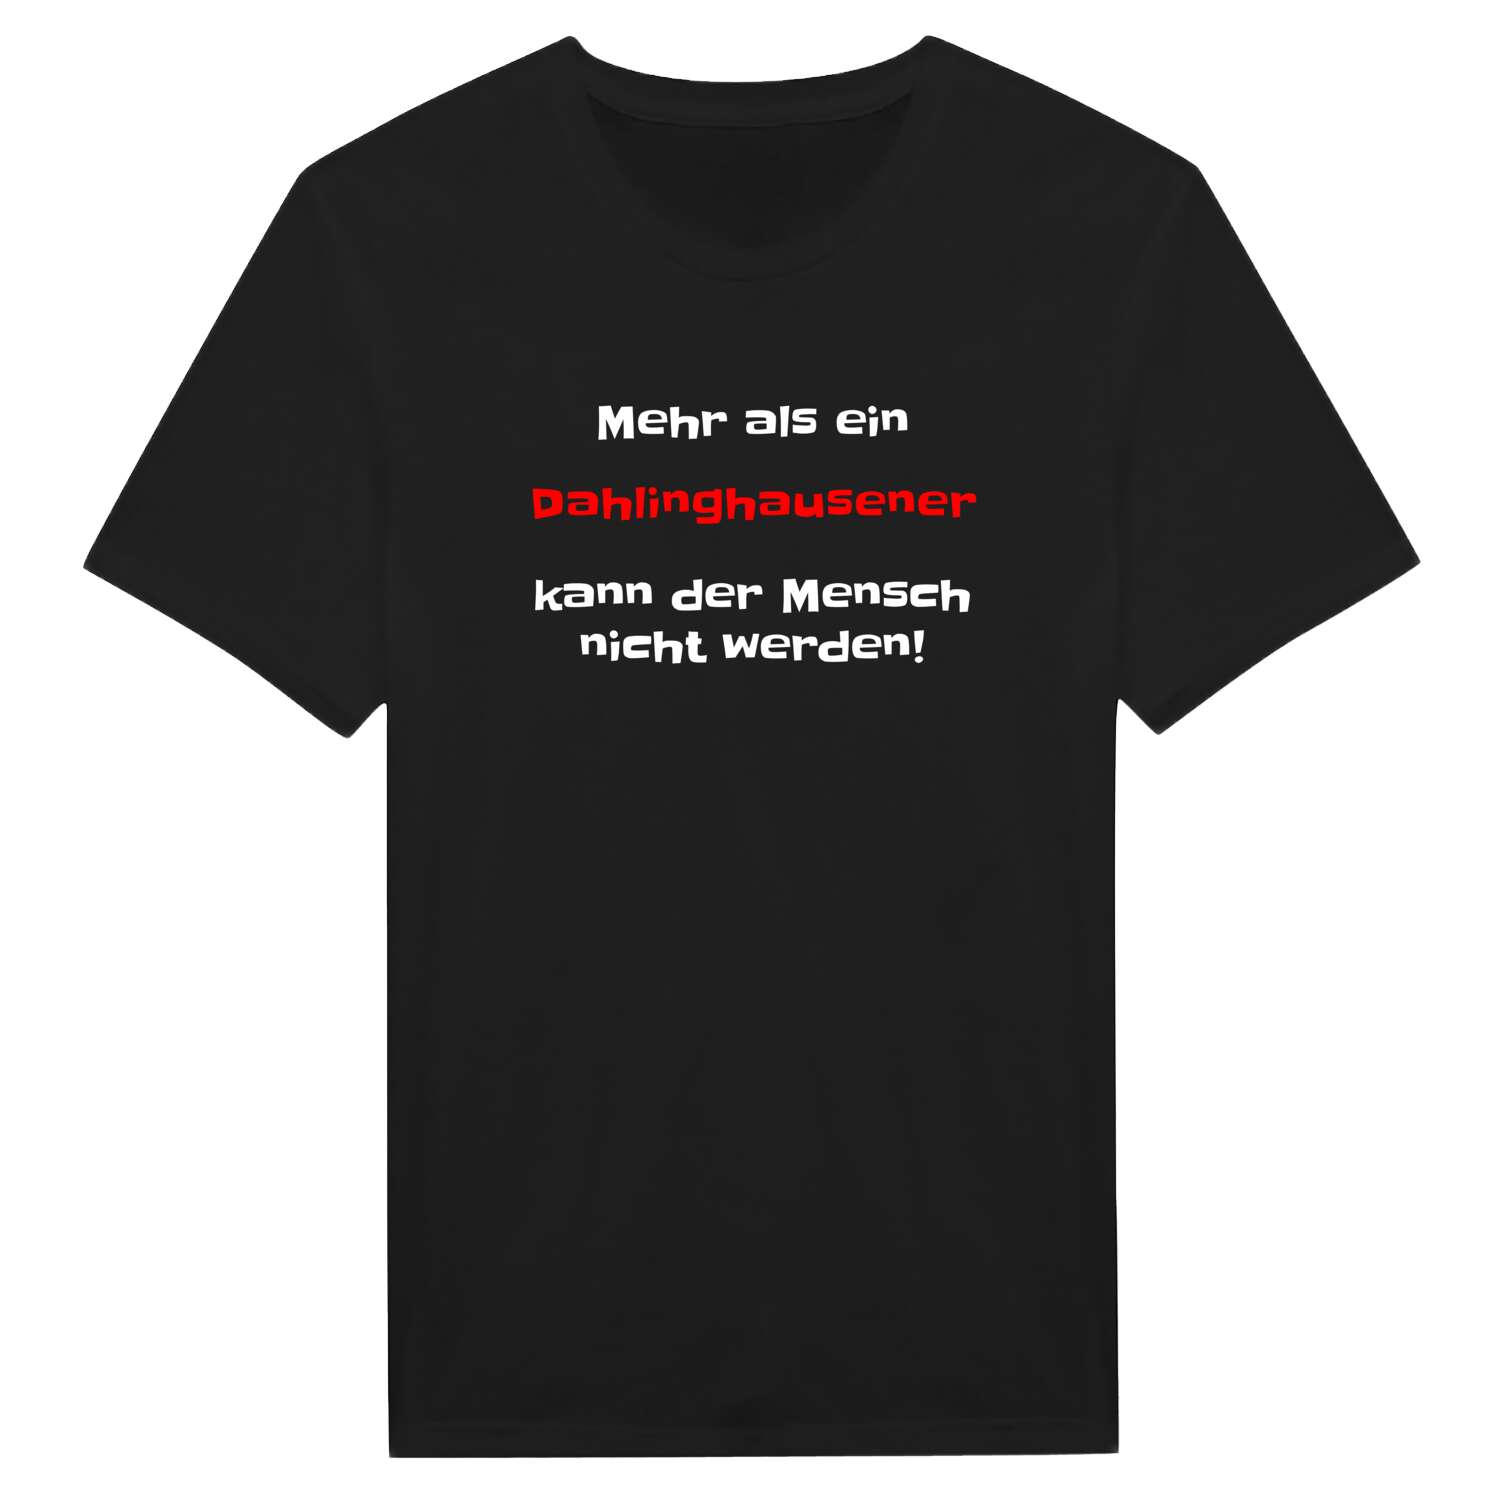 Dahlinghausen T-Shirt »Mehr als ein«